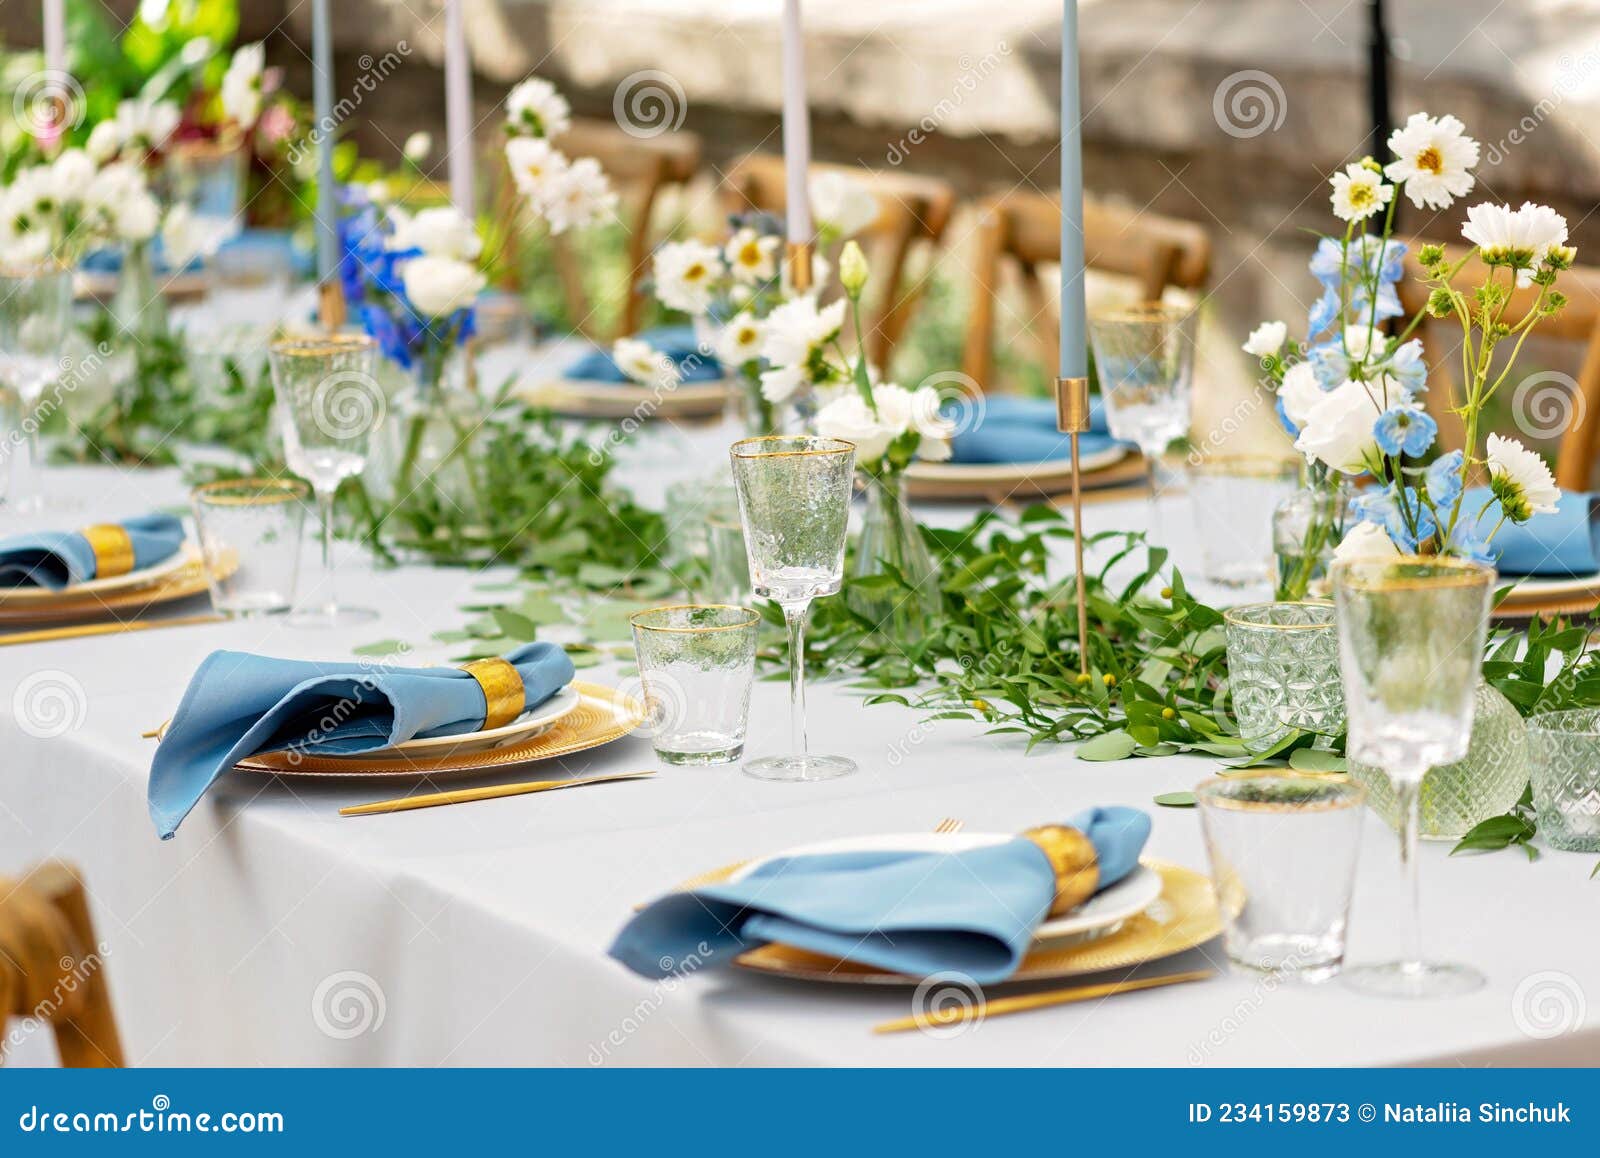 Wedding Decor, Flowers, Black and Gold Decor, Candles Stock Image - Image  of decoration, celebration: 138159151